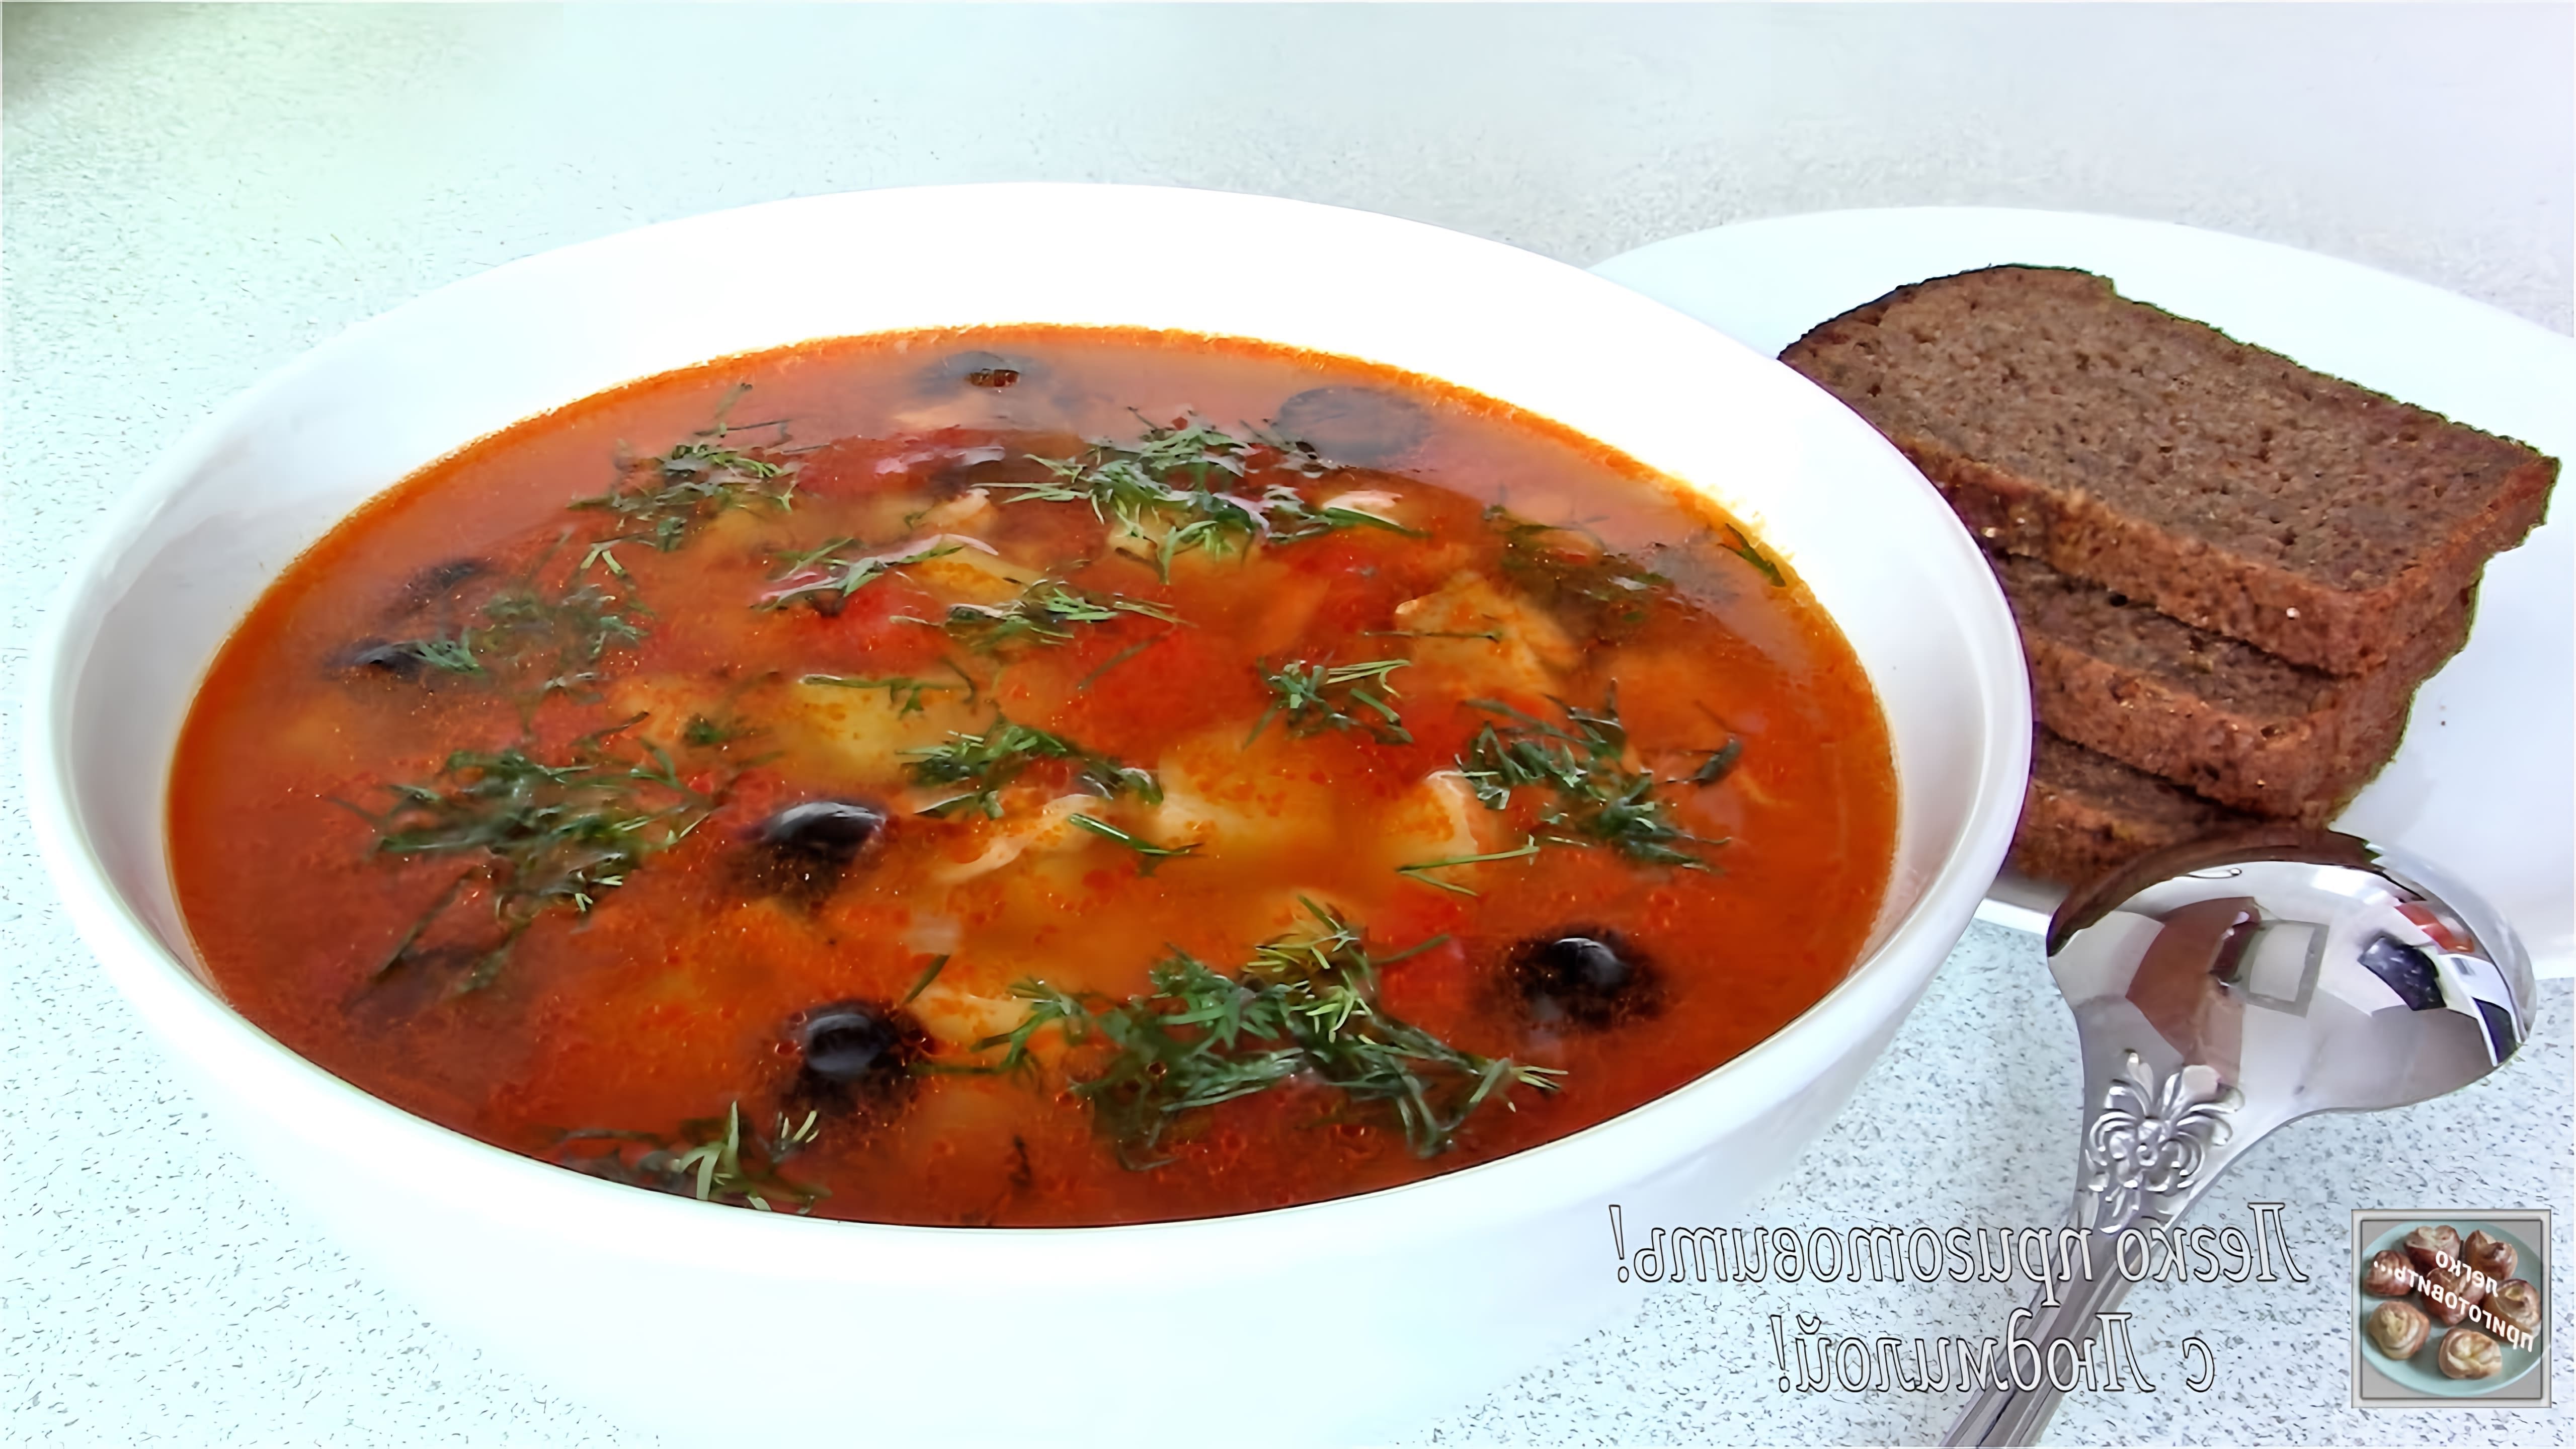 В этом видео демонстрируется процесс приготовления томатного рыбного супа